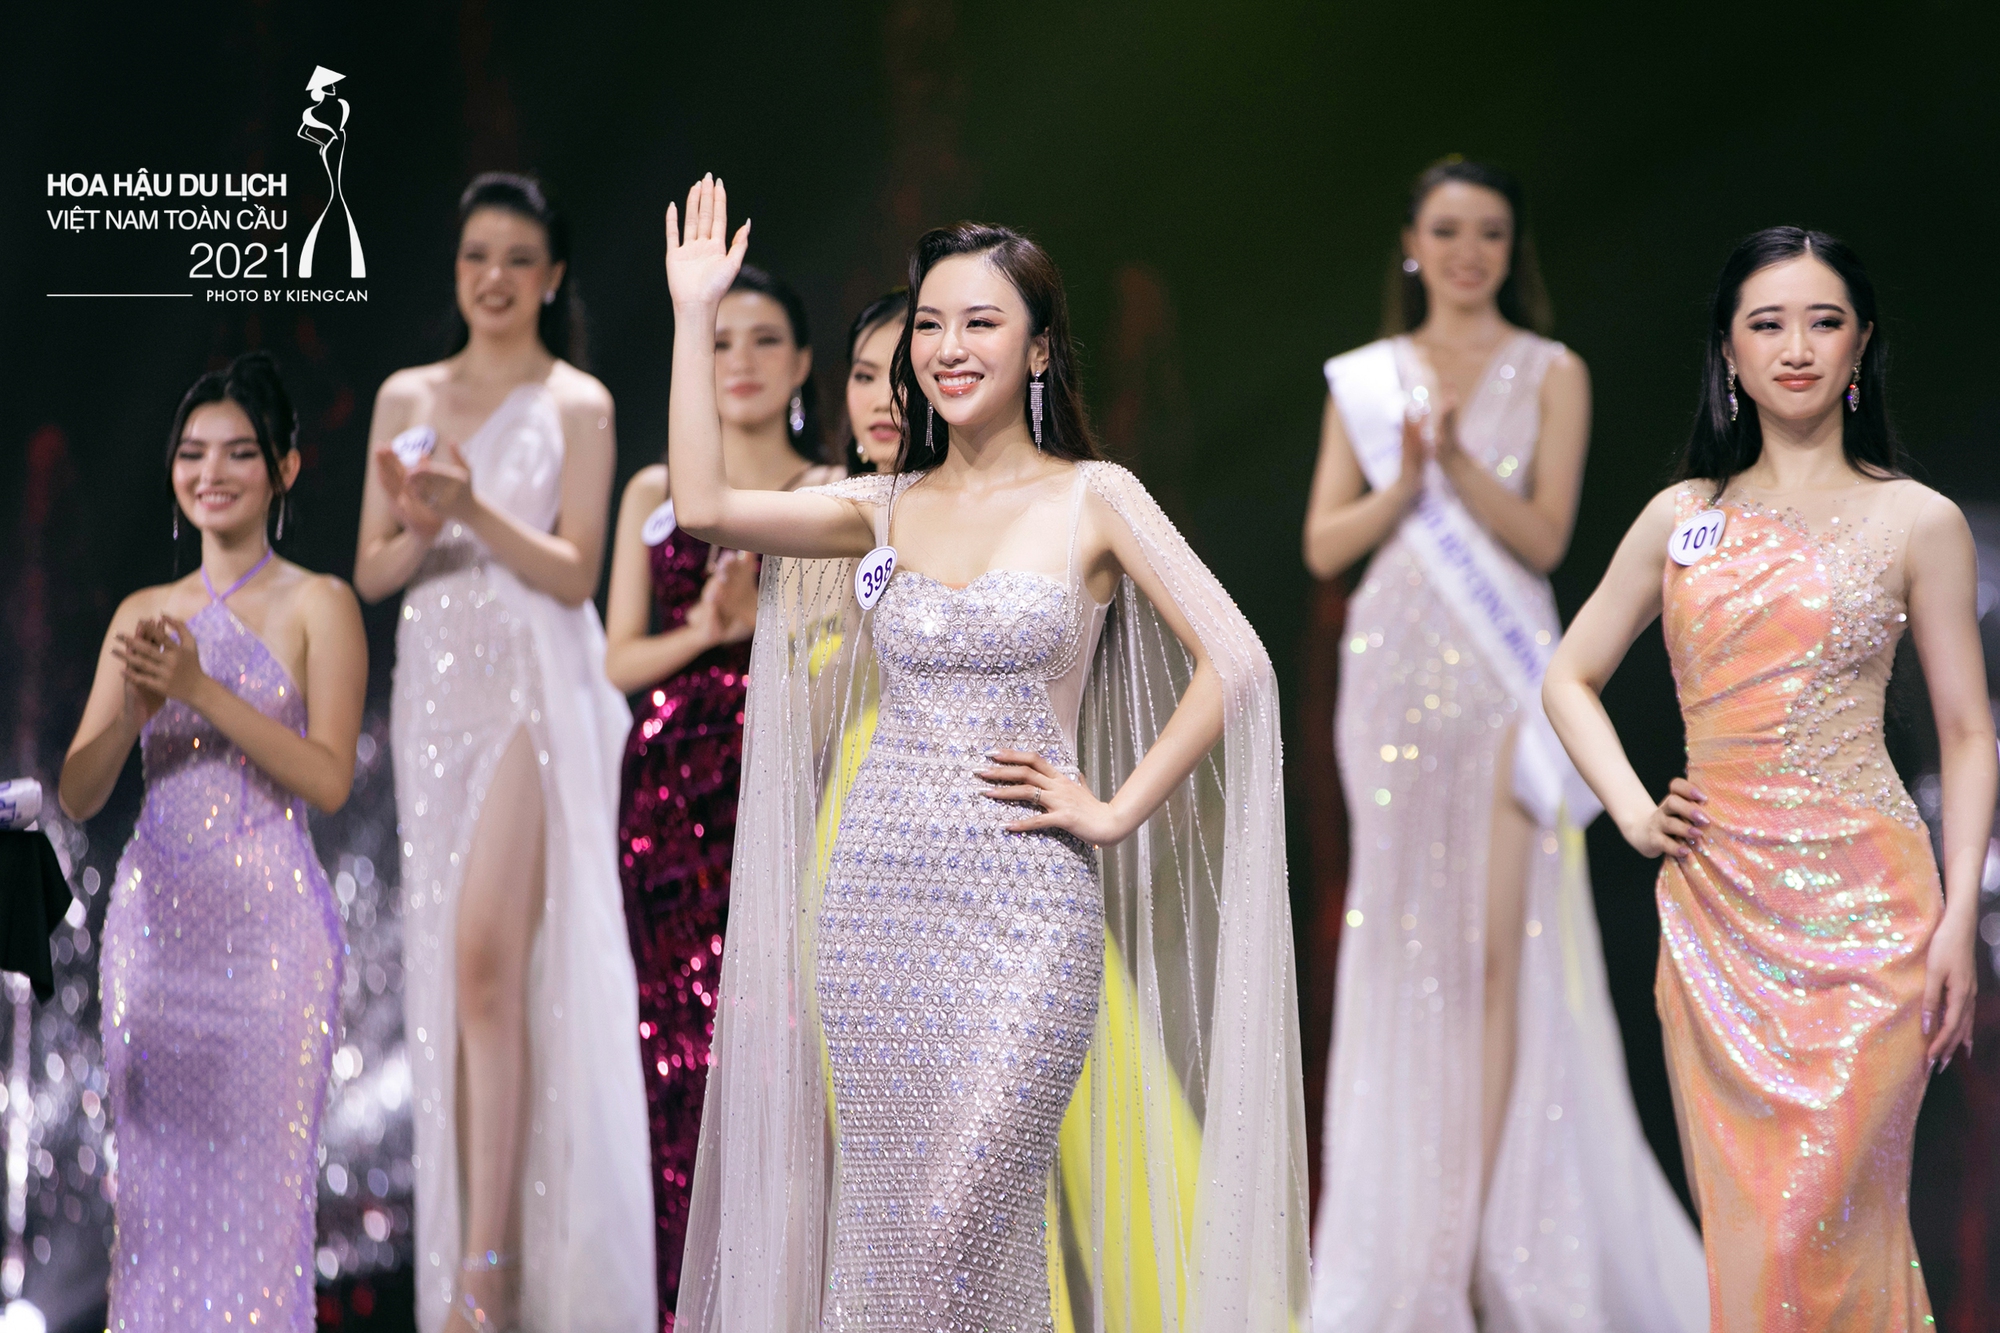 Con gái NSND Trần Nhượng: Học vấn khủng, đoạt 4 giải thưởng cùng lúc khi thi Hoa hậu - Ảnh 4.